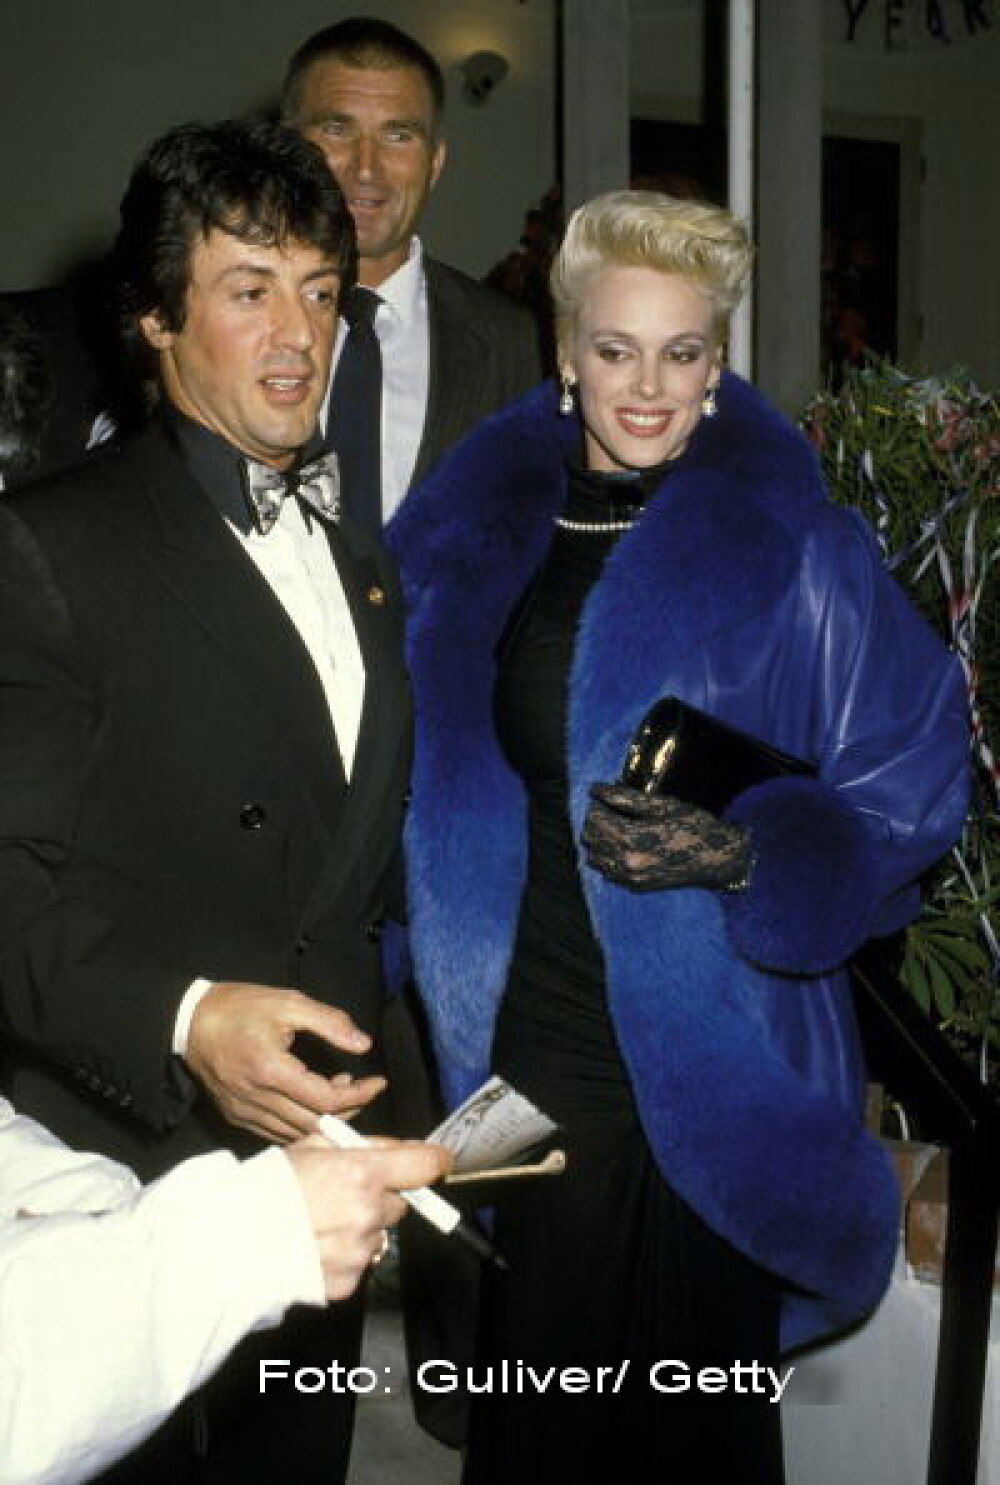 Fosta sotie a actorului Sylvester Stallone, rapusa de alcool, in ipostaze rusinoase. Galerie FOTO - Imaginea 5